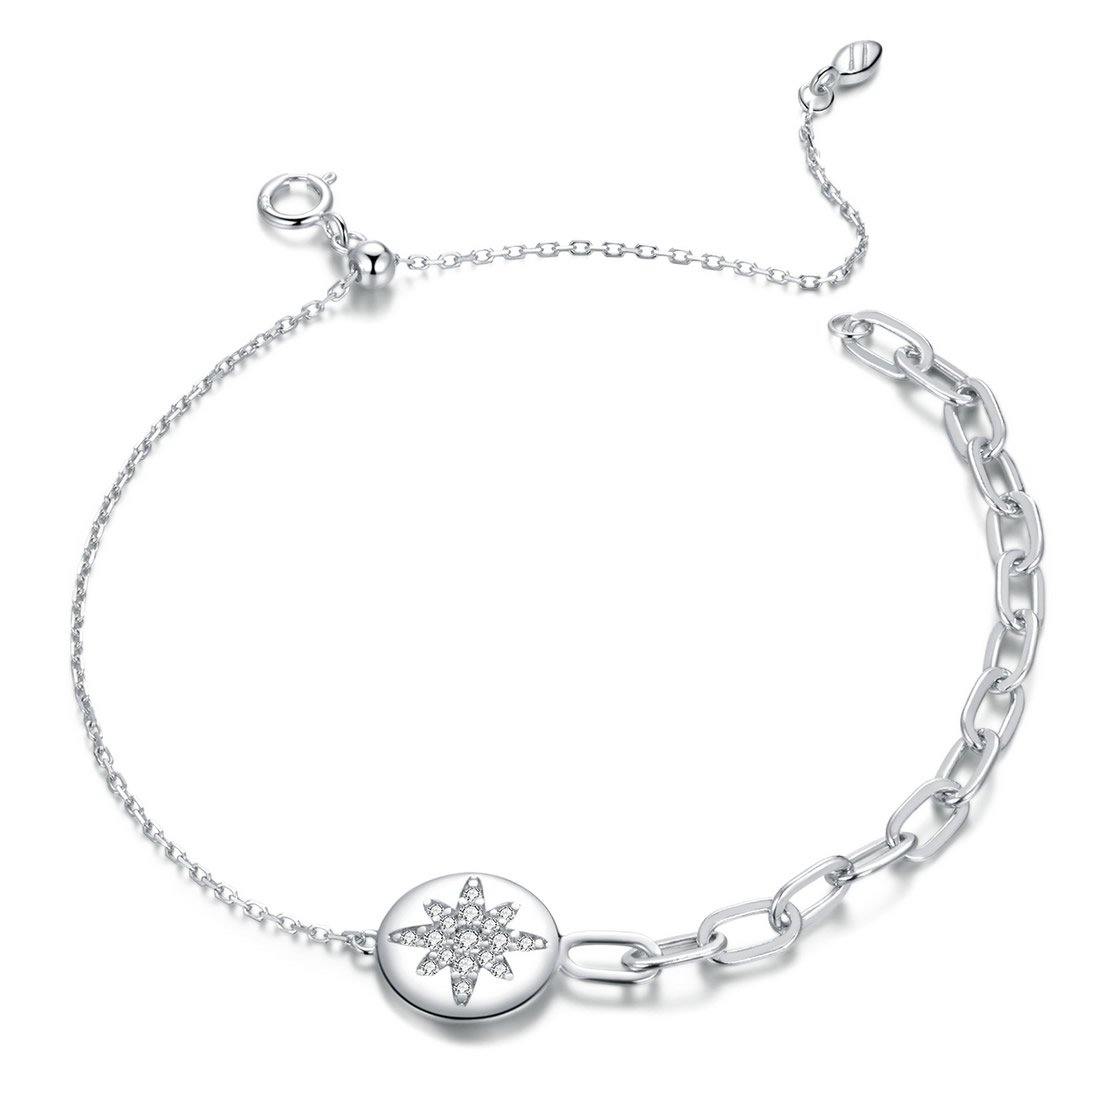 Shining Stars 925 Sterling Silver Bracelet - Aisllin Jewelry